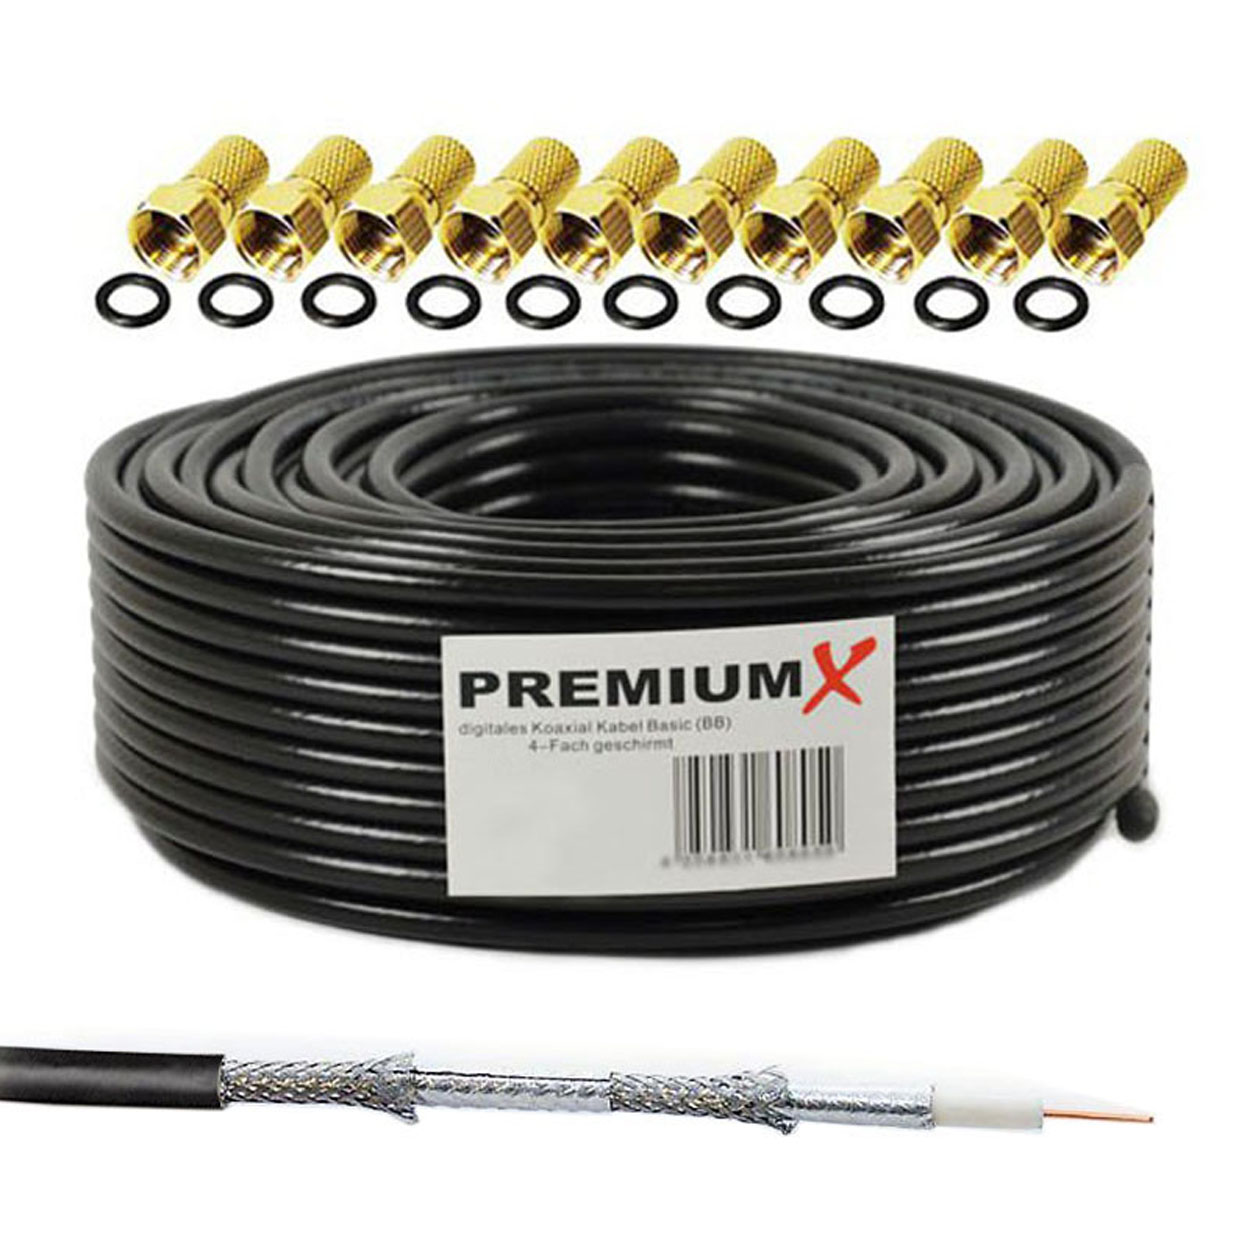 PREMIUMX 50m SAT 10x Koaxialkabel schwarz Antennenkabel 135dB F-Stecker Kabel BASIC 4-fach